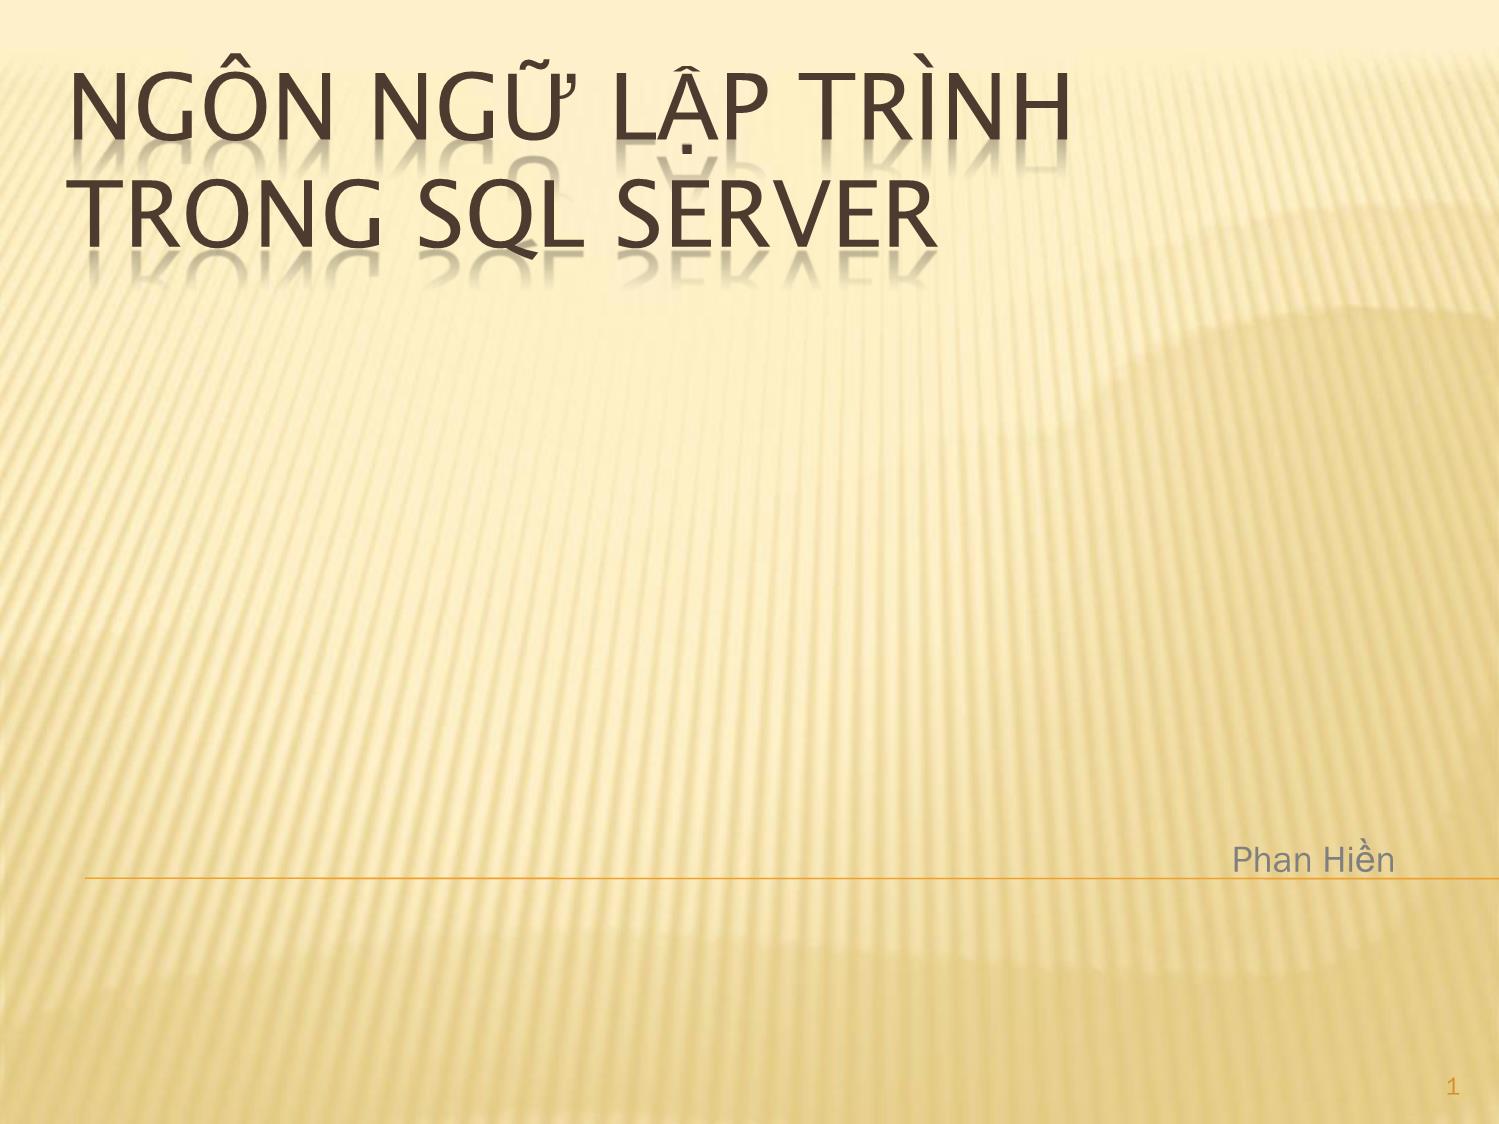 Ngôn ngữ lập trình trong SQL Server trang 1